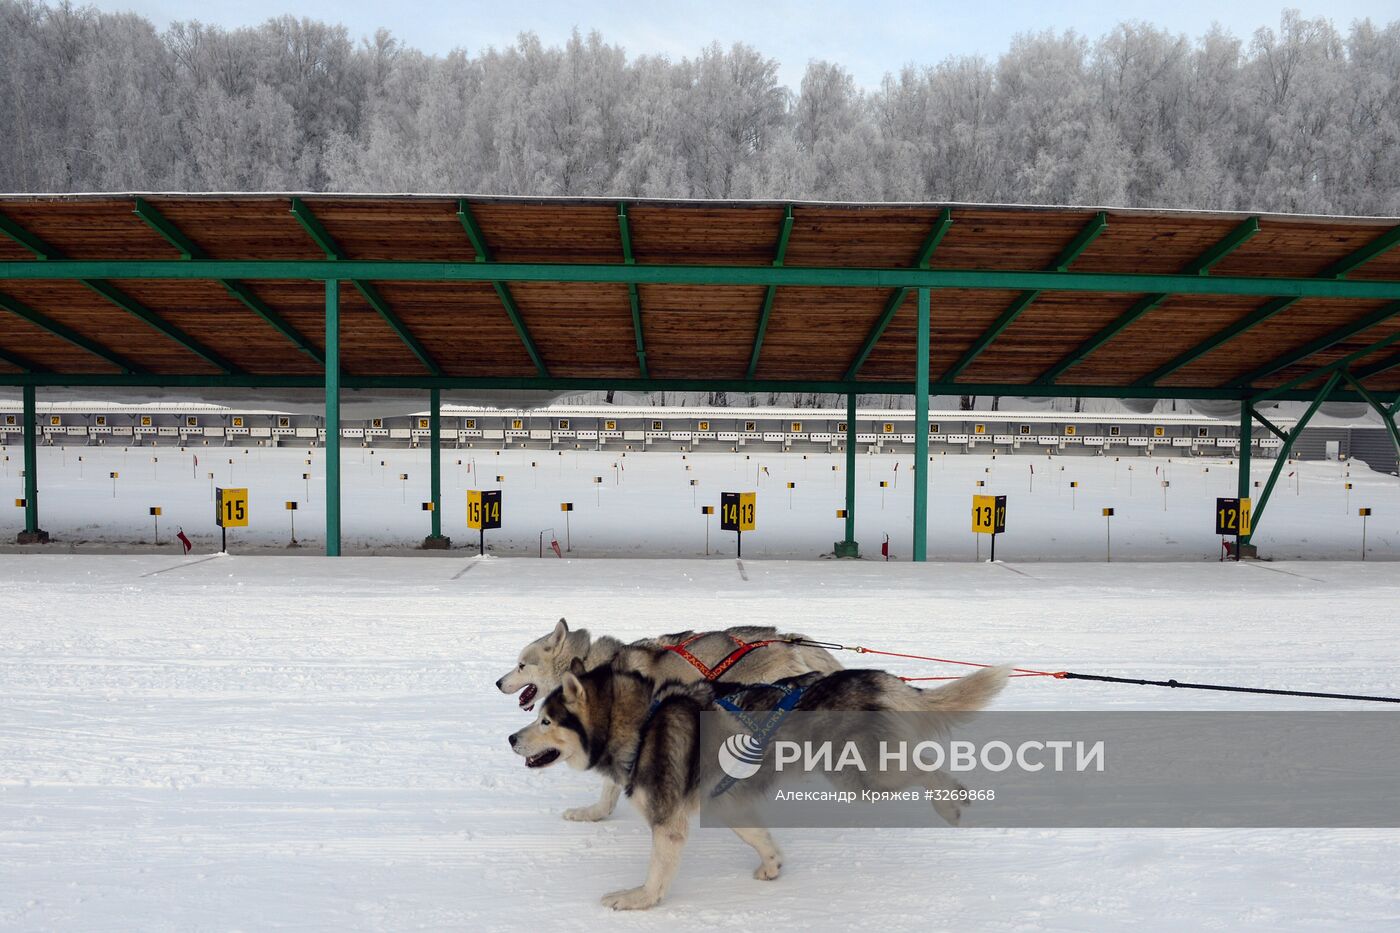 Соревнования по ездовому спорту в Новосибирске